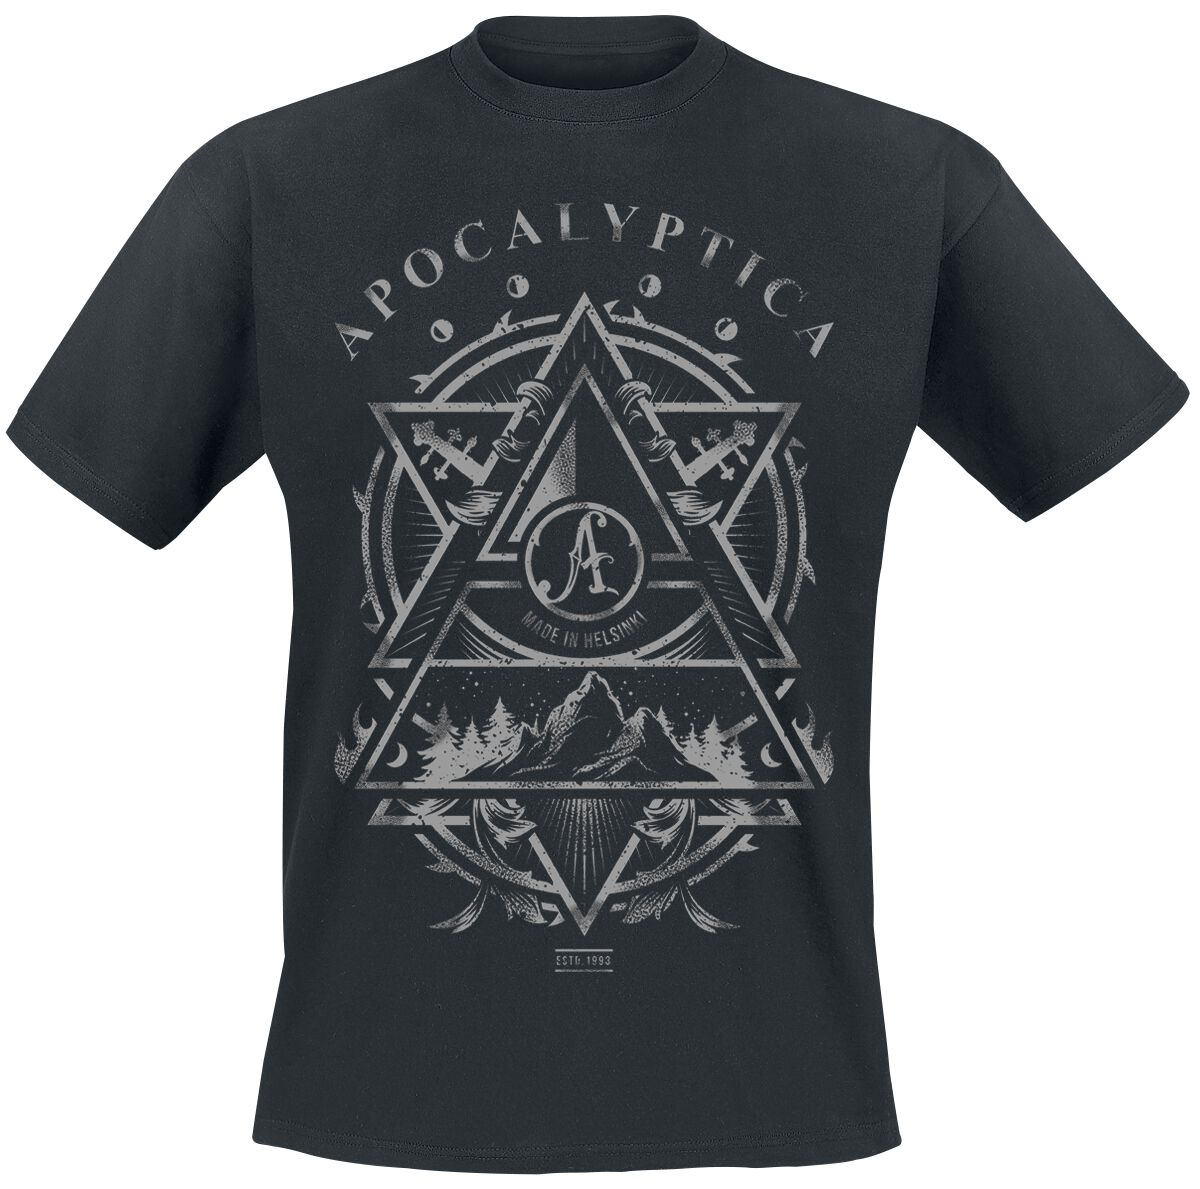 Apocalyptica T-Shirt - Made In Helsinki - S bis XXL - für Männer - Größe M - schwarz  - Lizenziertes Merchandise! von Apocalyptica